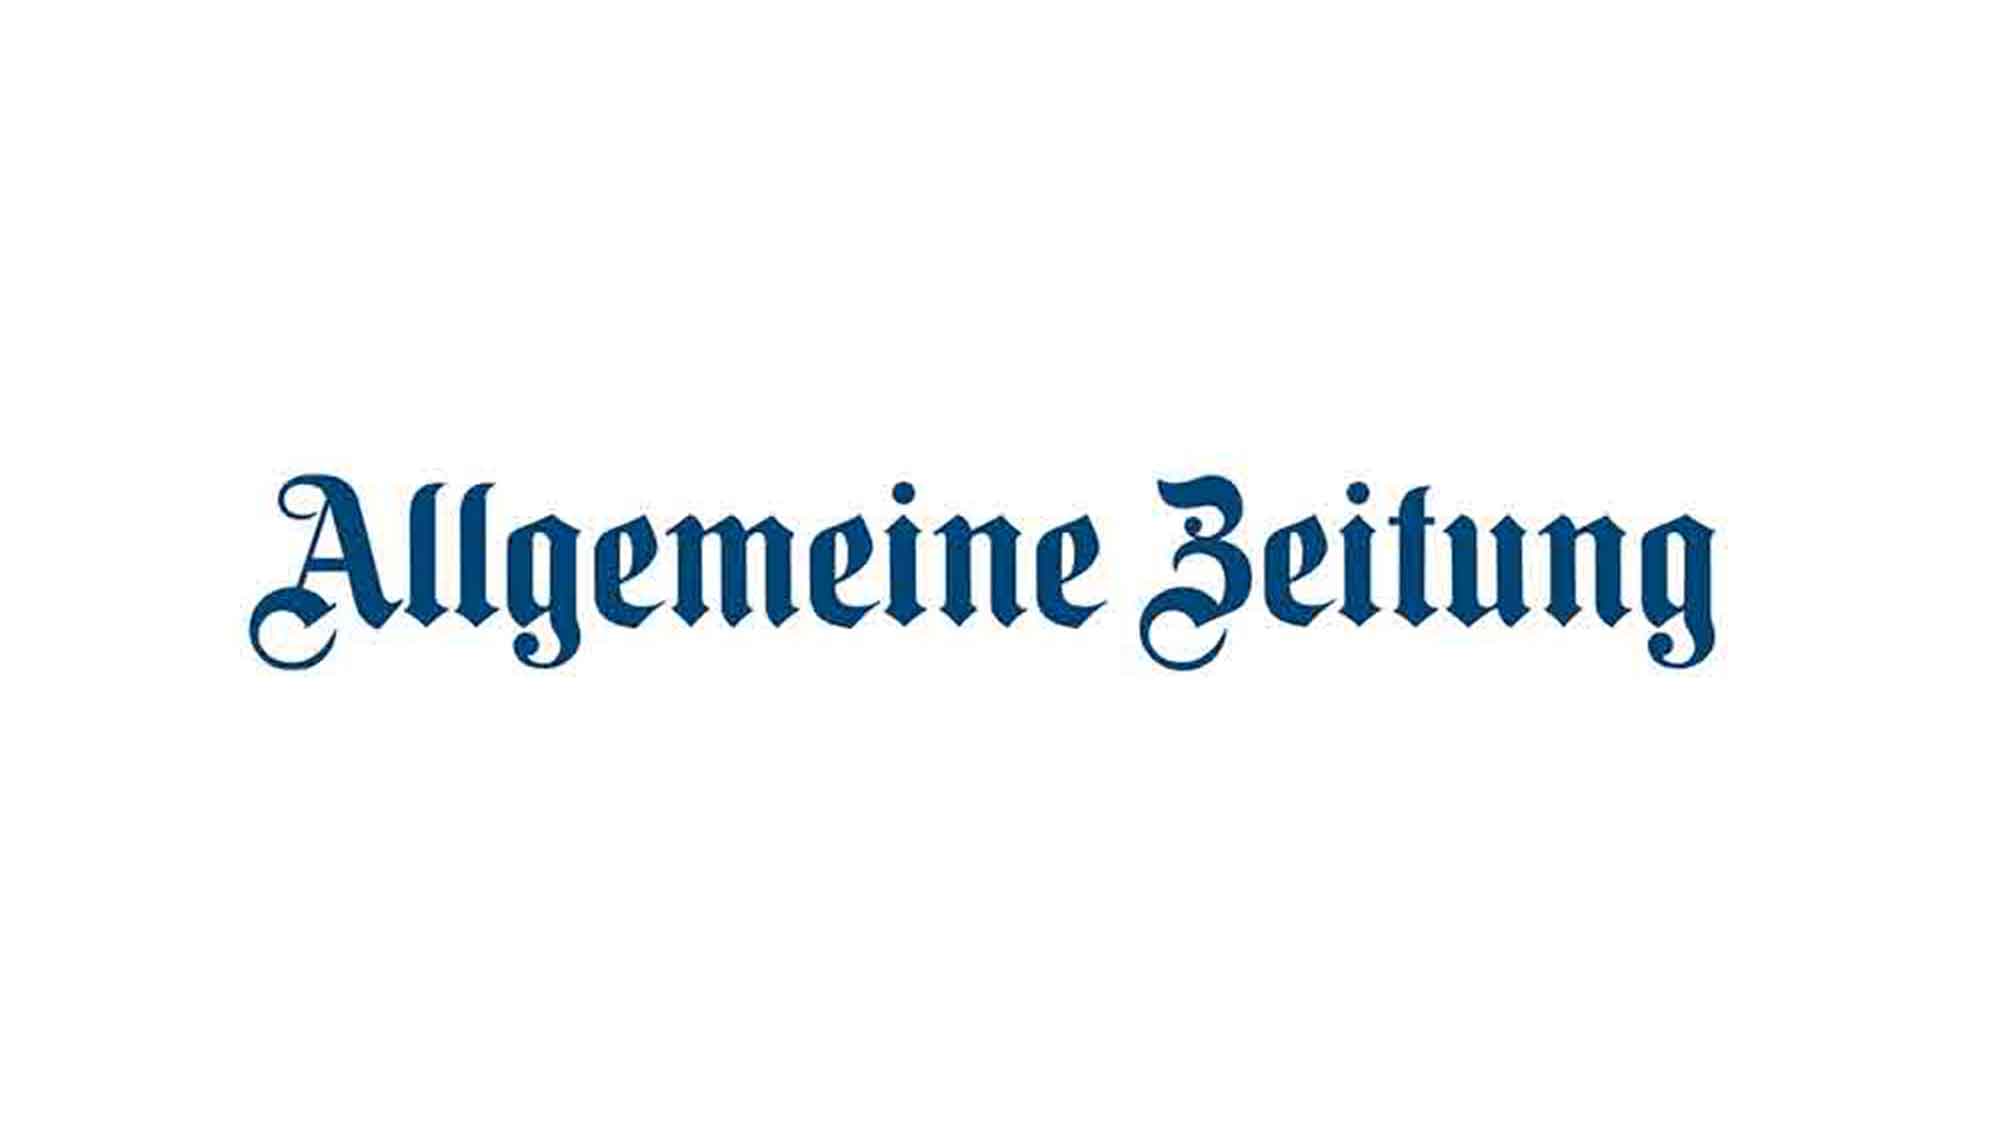 Presseschau Gütersloh: Allgemeine Zeitung Mainz – Habeck kann den Verdacht der Manipulation nicht entkräften